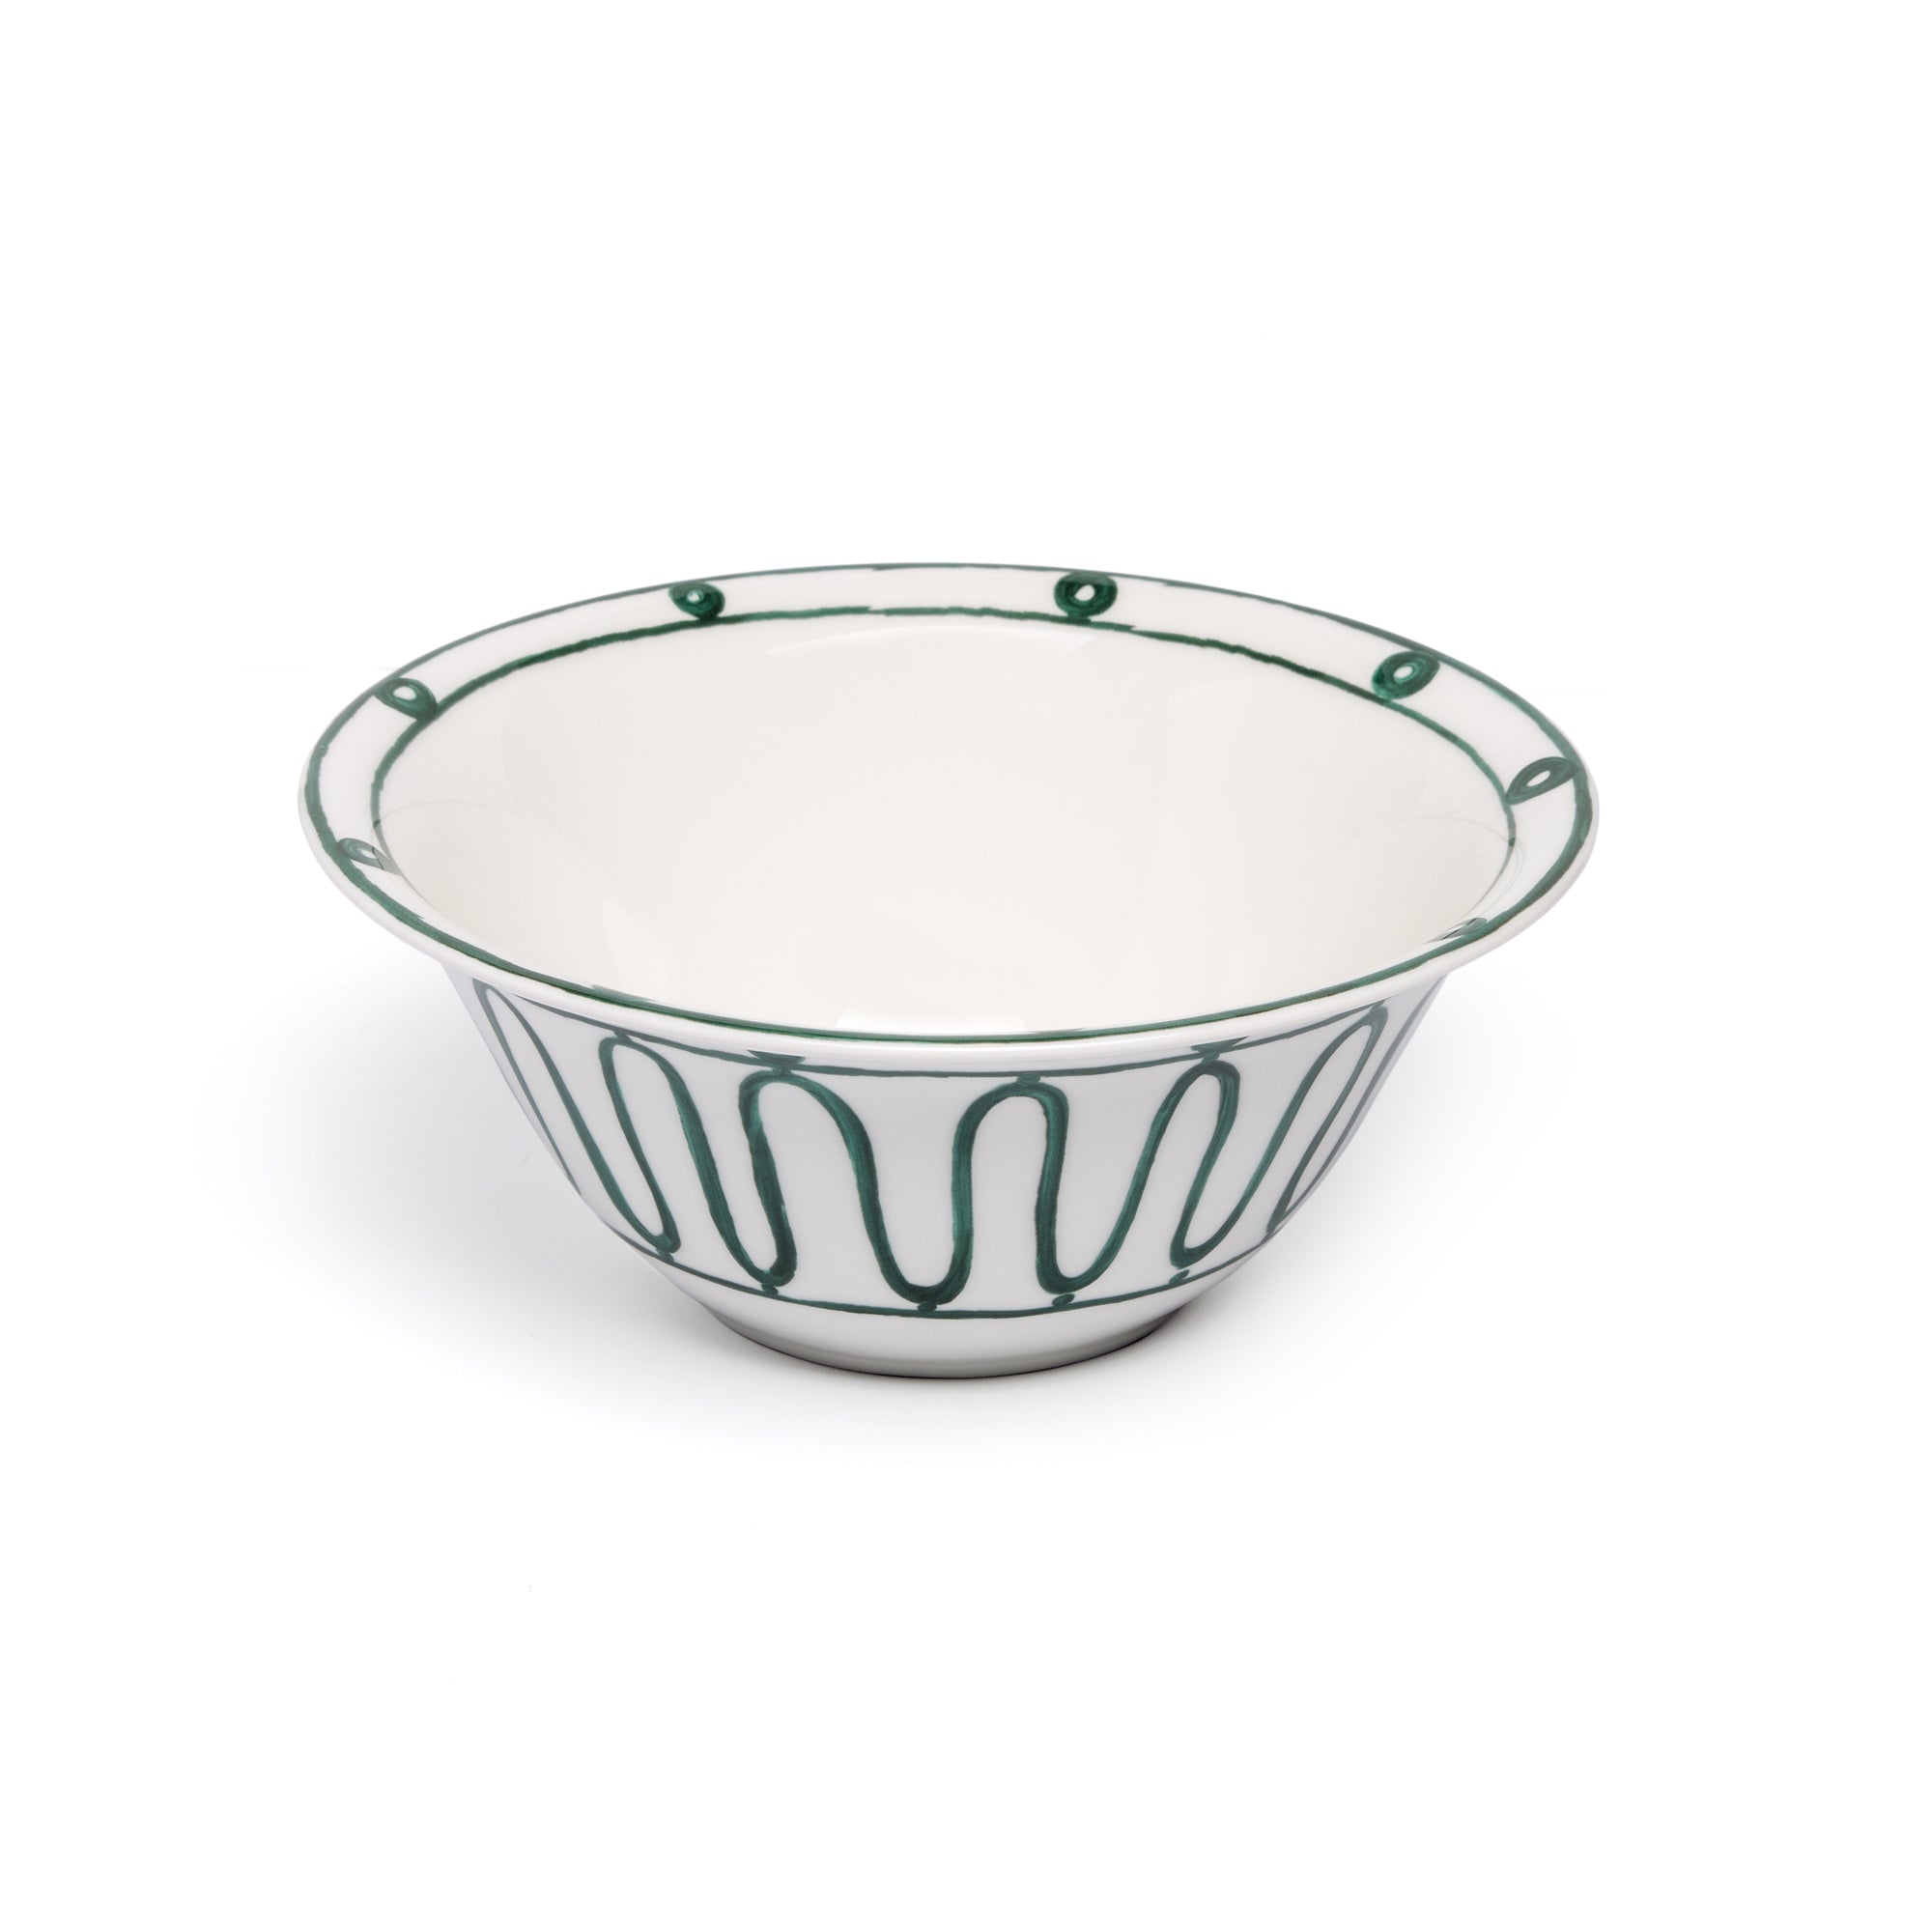 Kyma Salad Bowl 25cm -  Green/White